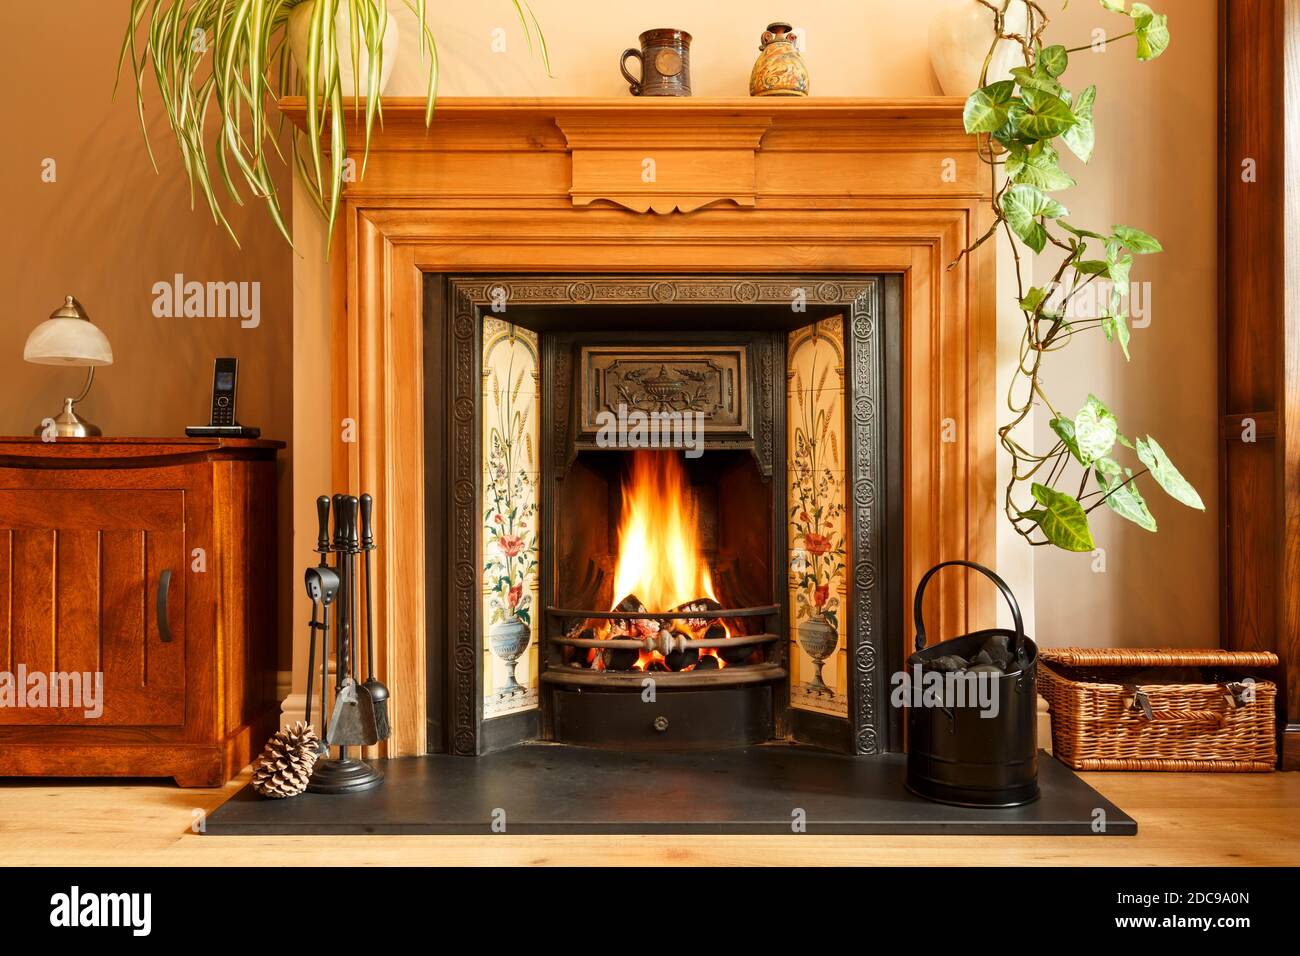 Acogedora chimenea de invierno, con fuego abierto con llamas reales quemando carbón, interior de la casa del Reino Unido Foto de stock